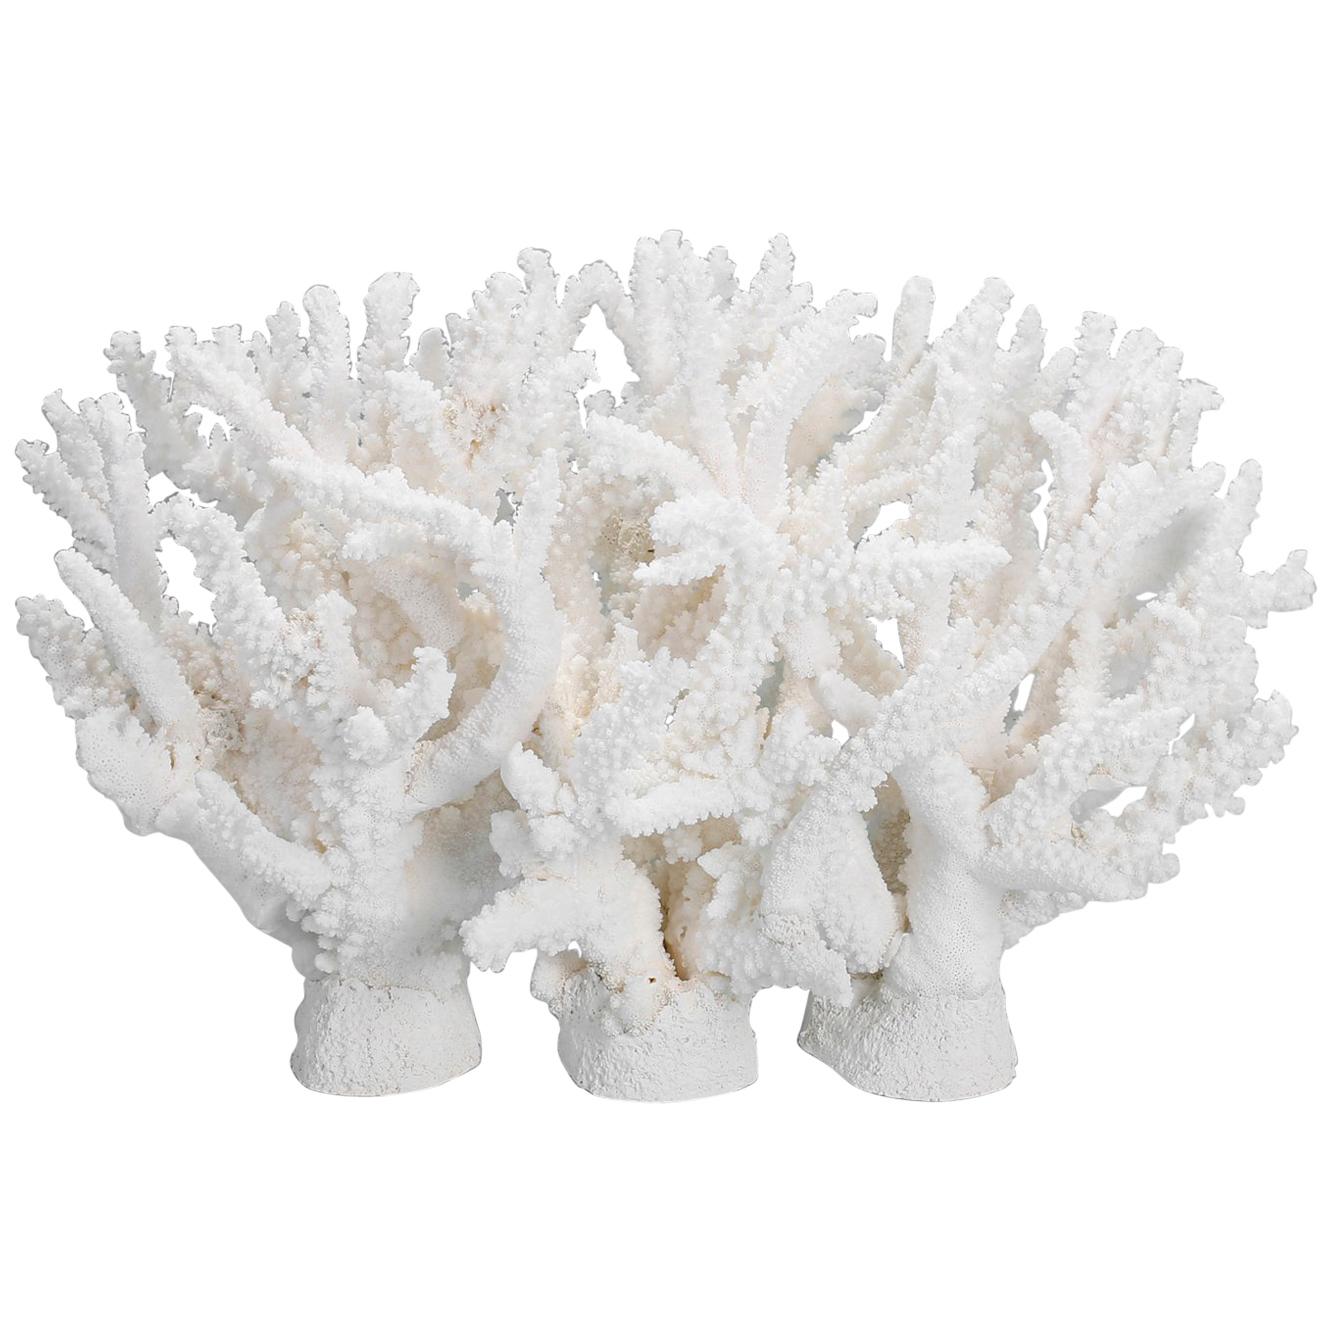 Custom Coral Sculpture or Centerpiece